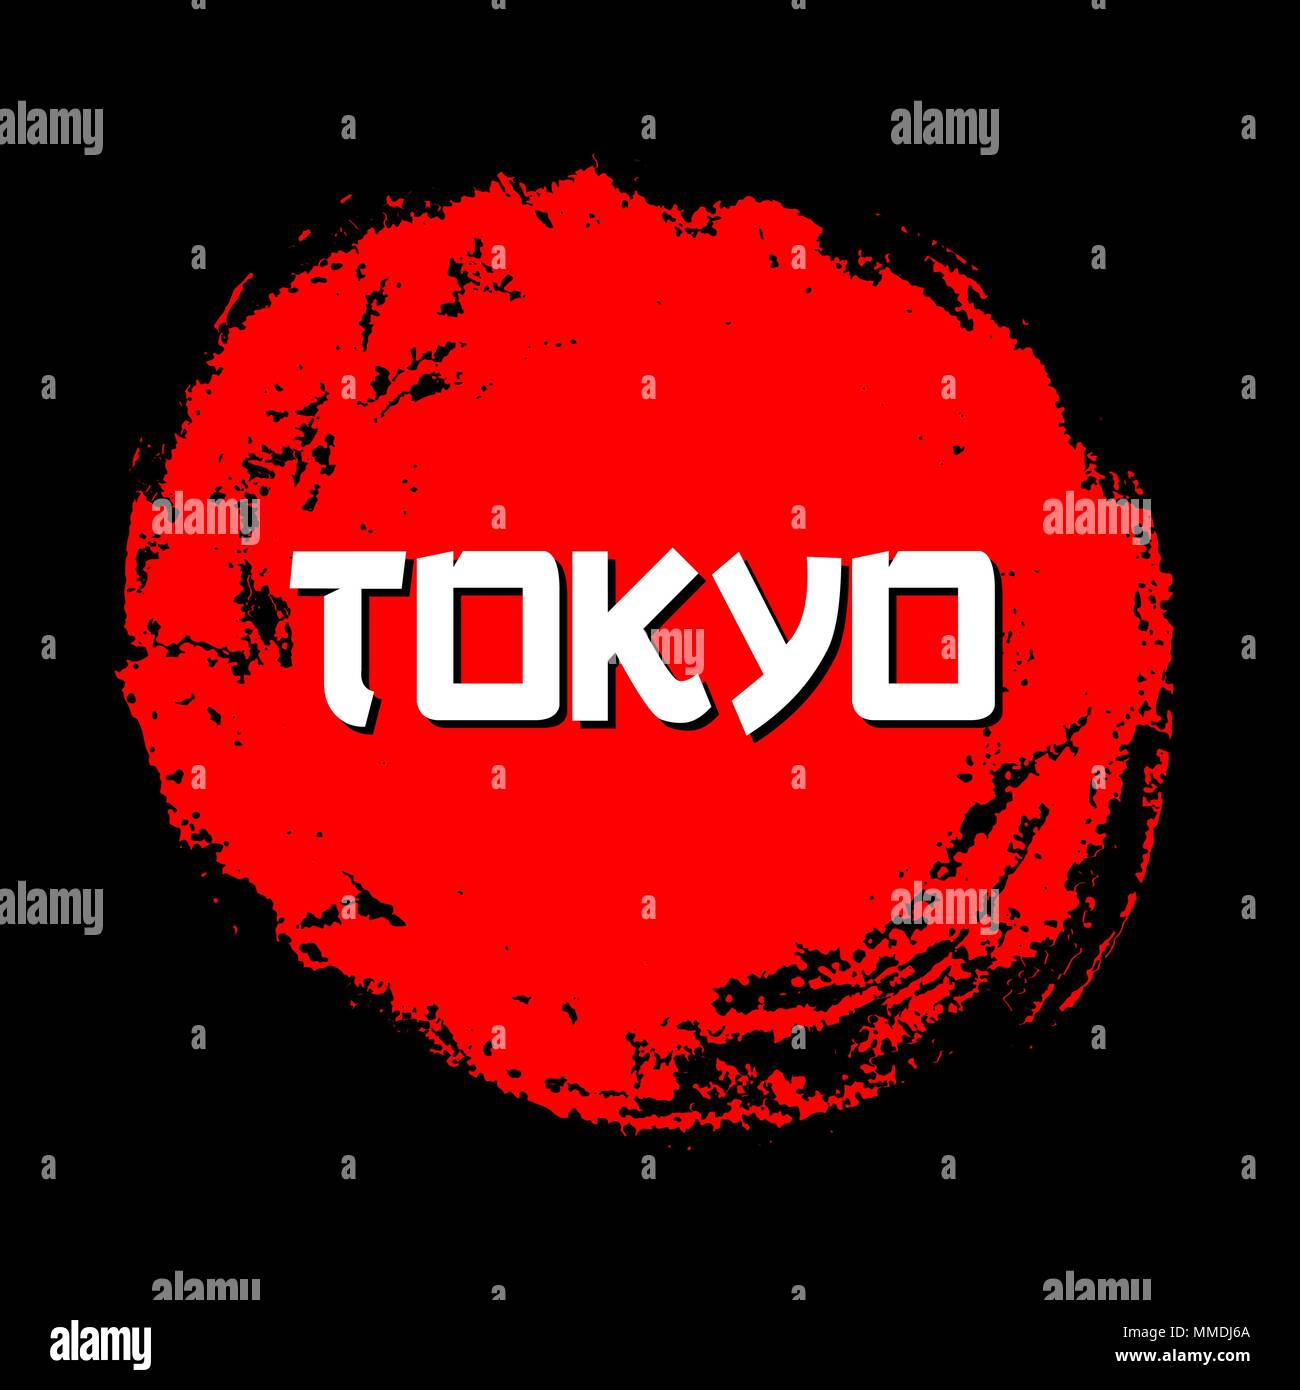 Tokio rote Zeichen Vektor. Grunge roter Kreis Stempel auf schwarzen Hintergrund. Chinesische Tinte oder Gummi texturierte Sun Symbol Abbildung. Stock Vektor